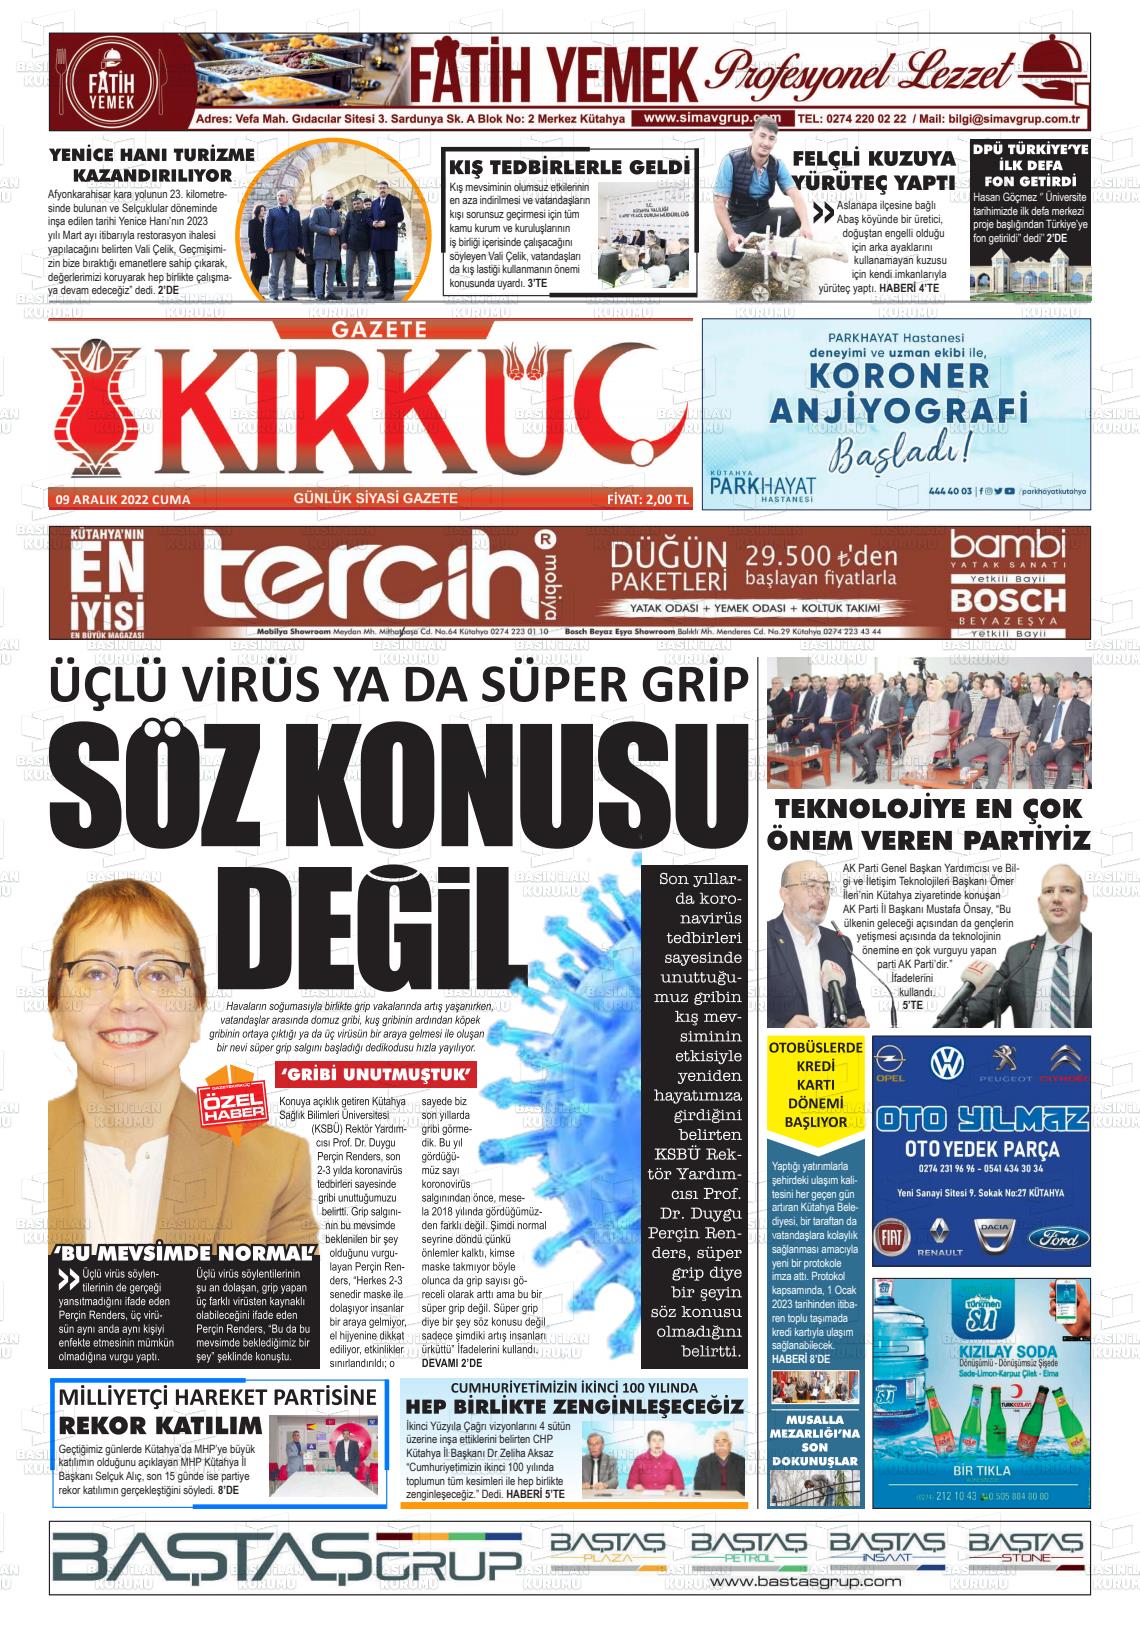 09 Aralık 2022 Gazete Kırküç Gazete Manşeti